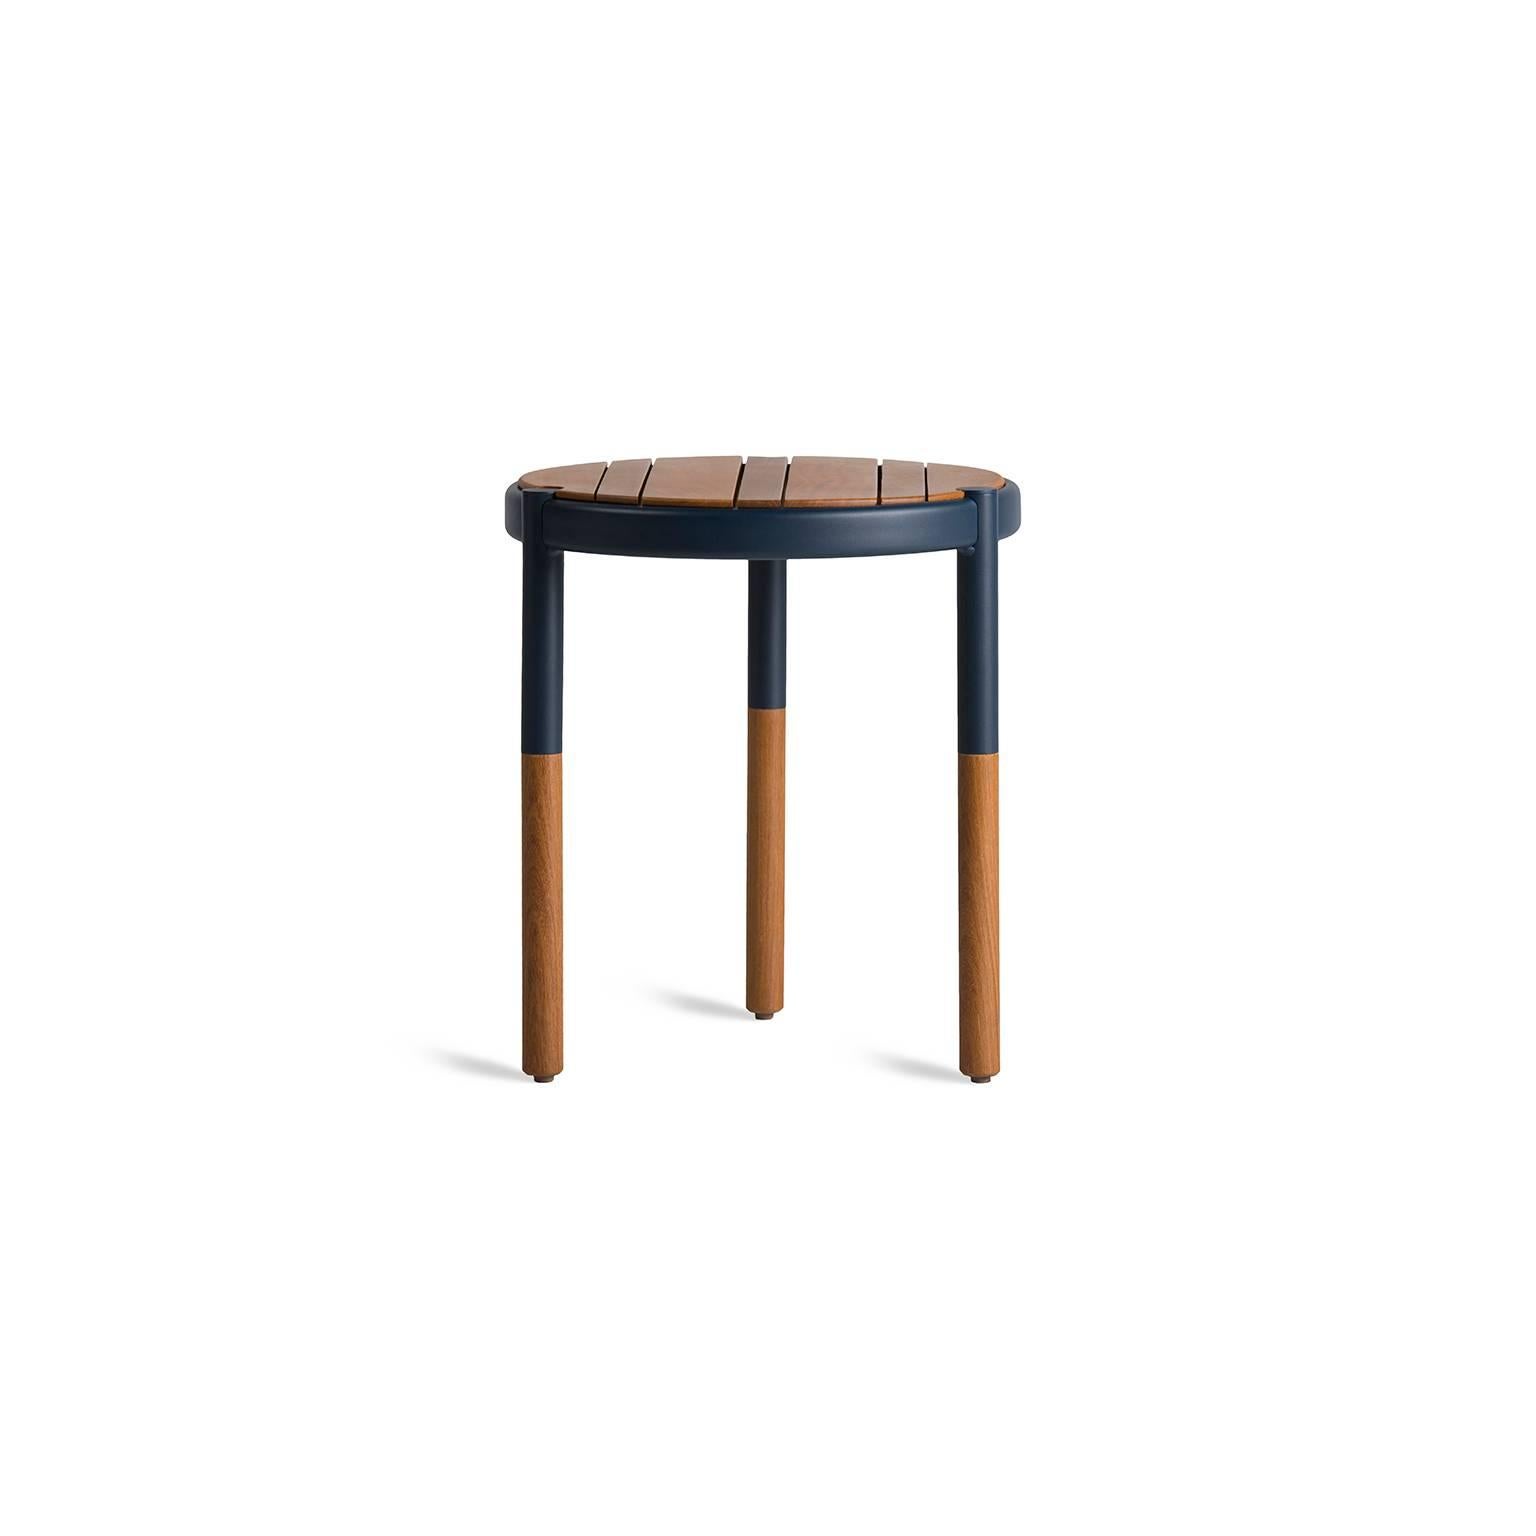 Ces tables d'appoint gigognes, fabriquées en bois et en métal, sont conçues pour un usage extérieur. La table d'appoint ronde, design minimaliste pour l'extérieur est une table d'appoint qui combine une fine épaisseur de bois massif avec un corps